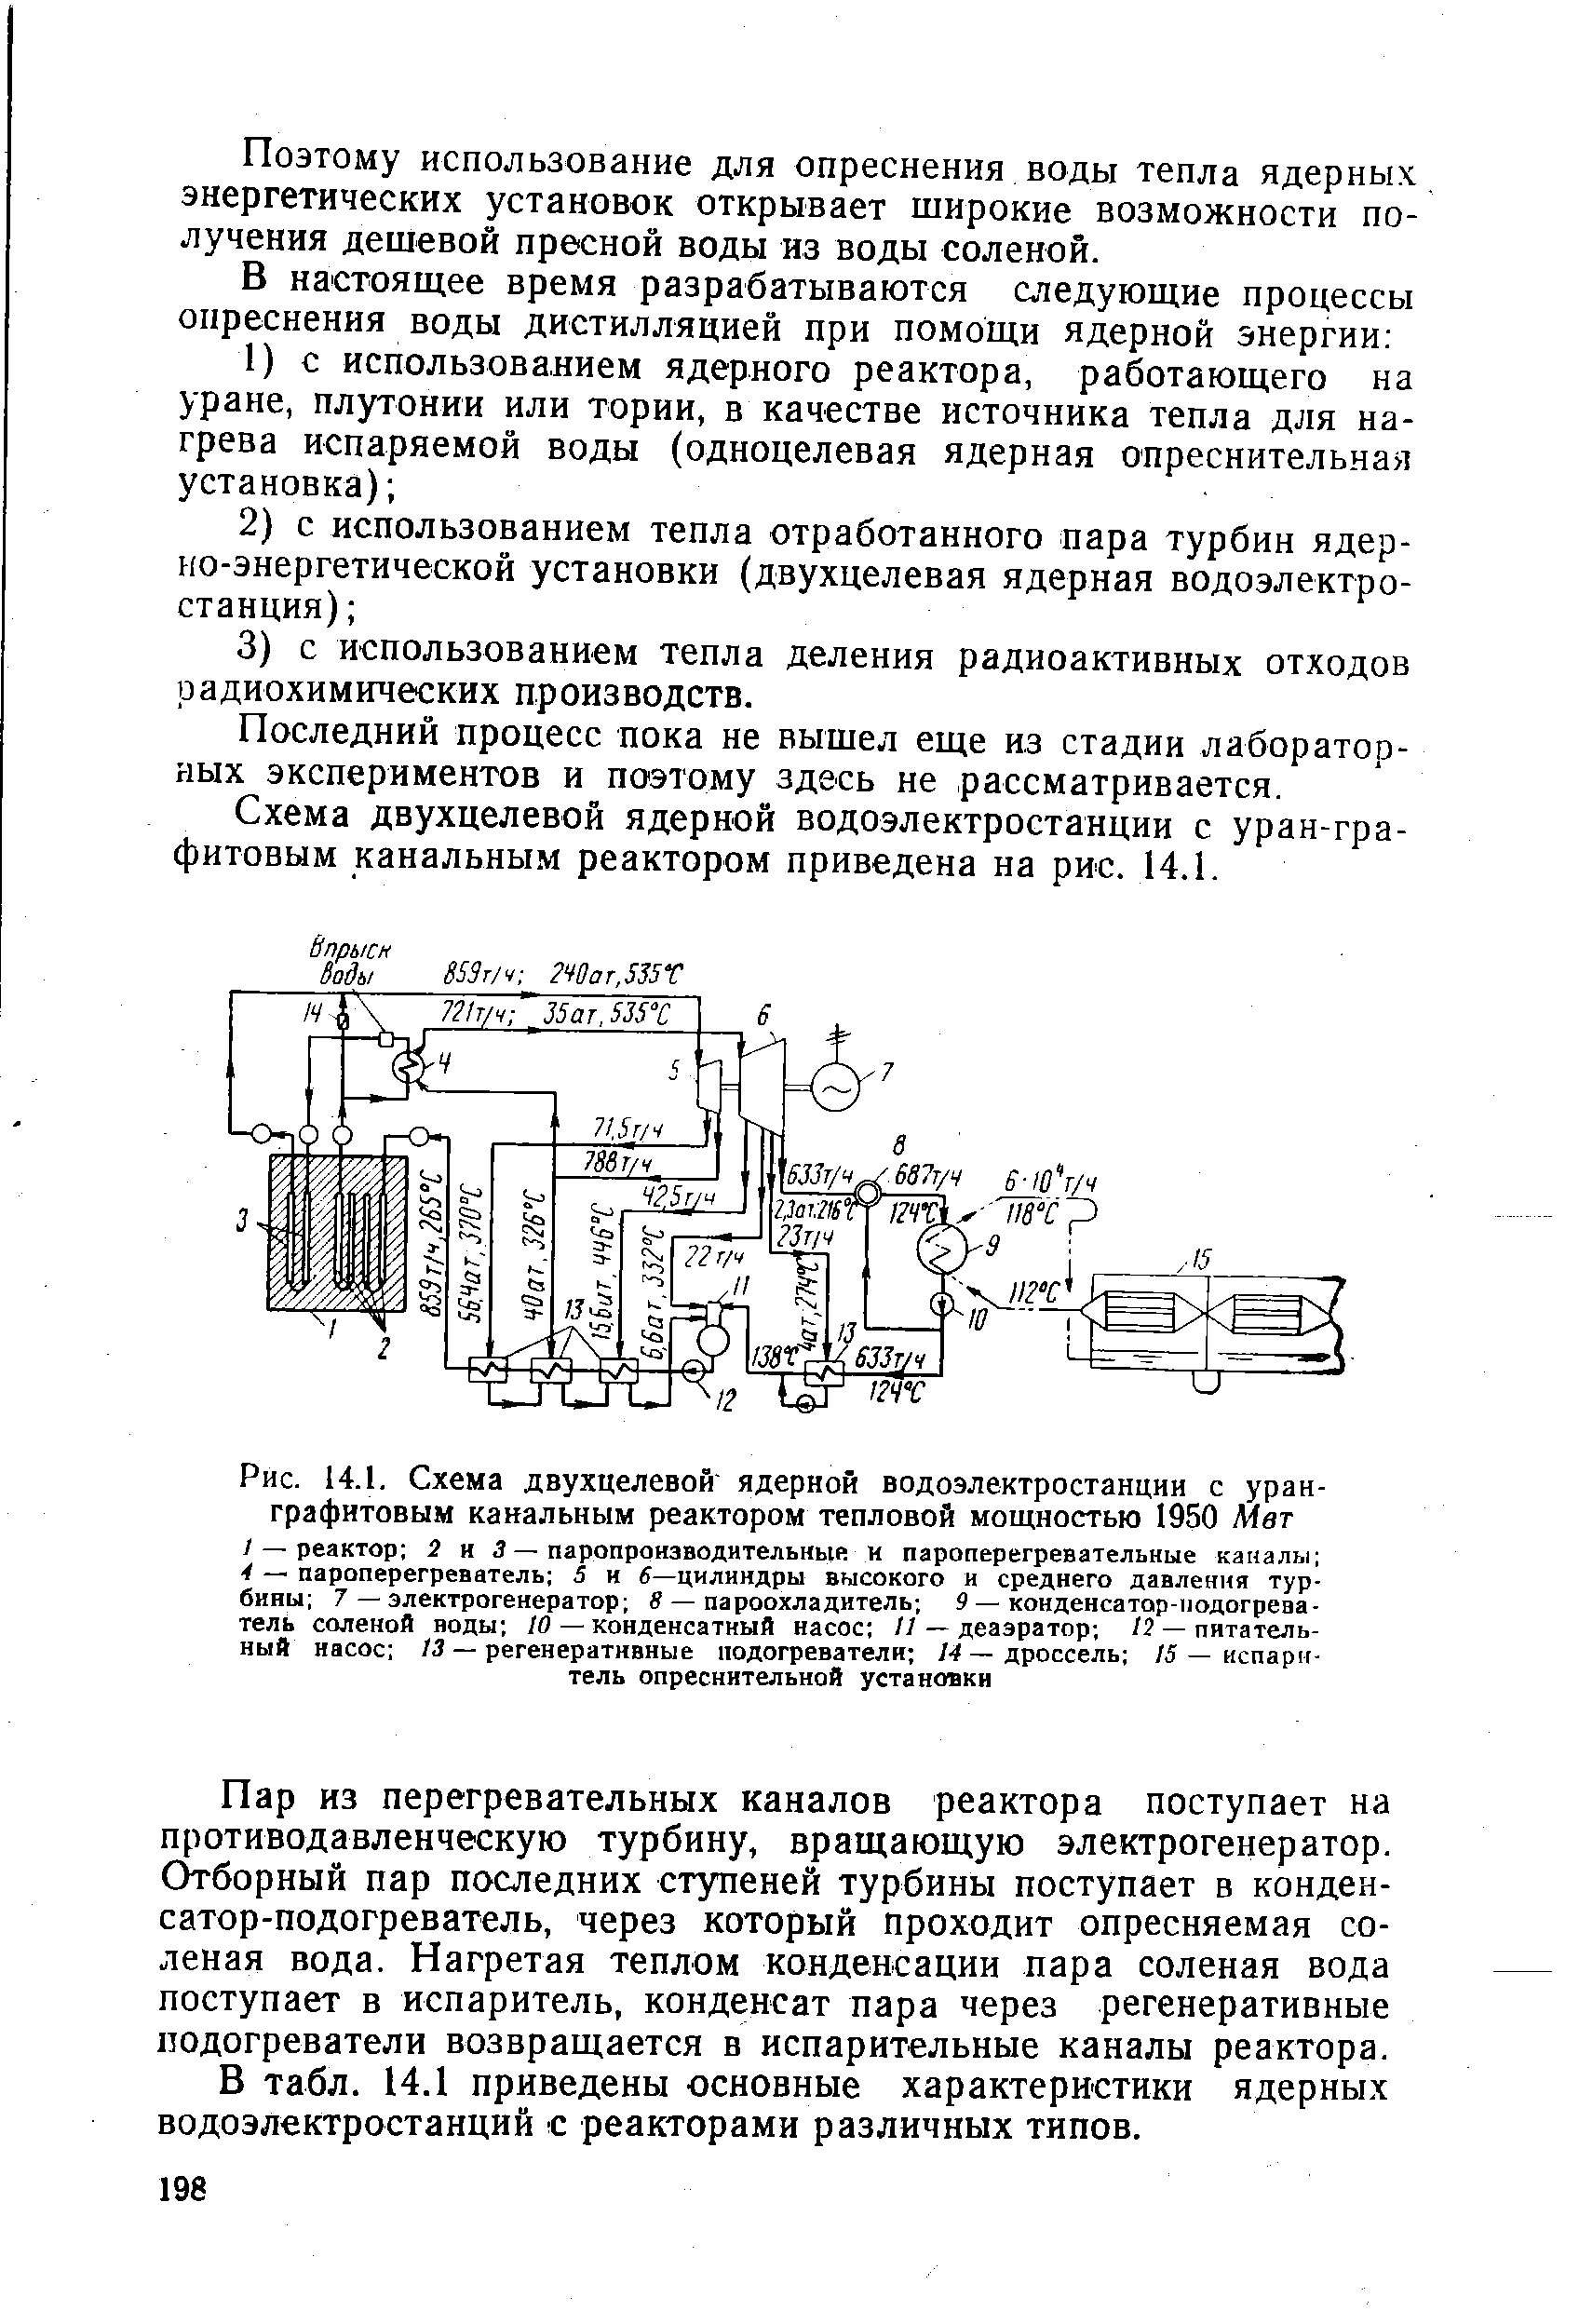 Рис. 14.1. Схема двухцелевой ядерной водоэлектростанции с уран-графитовым канальным реактором тепловой мощностью 1950 Мет
